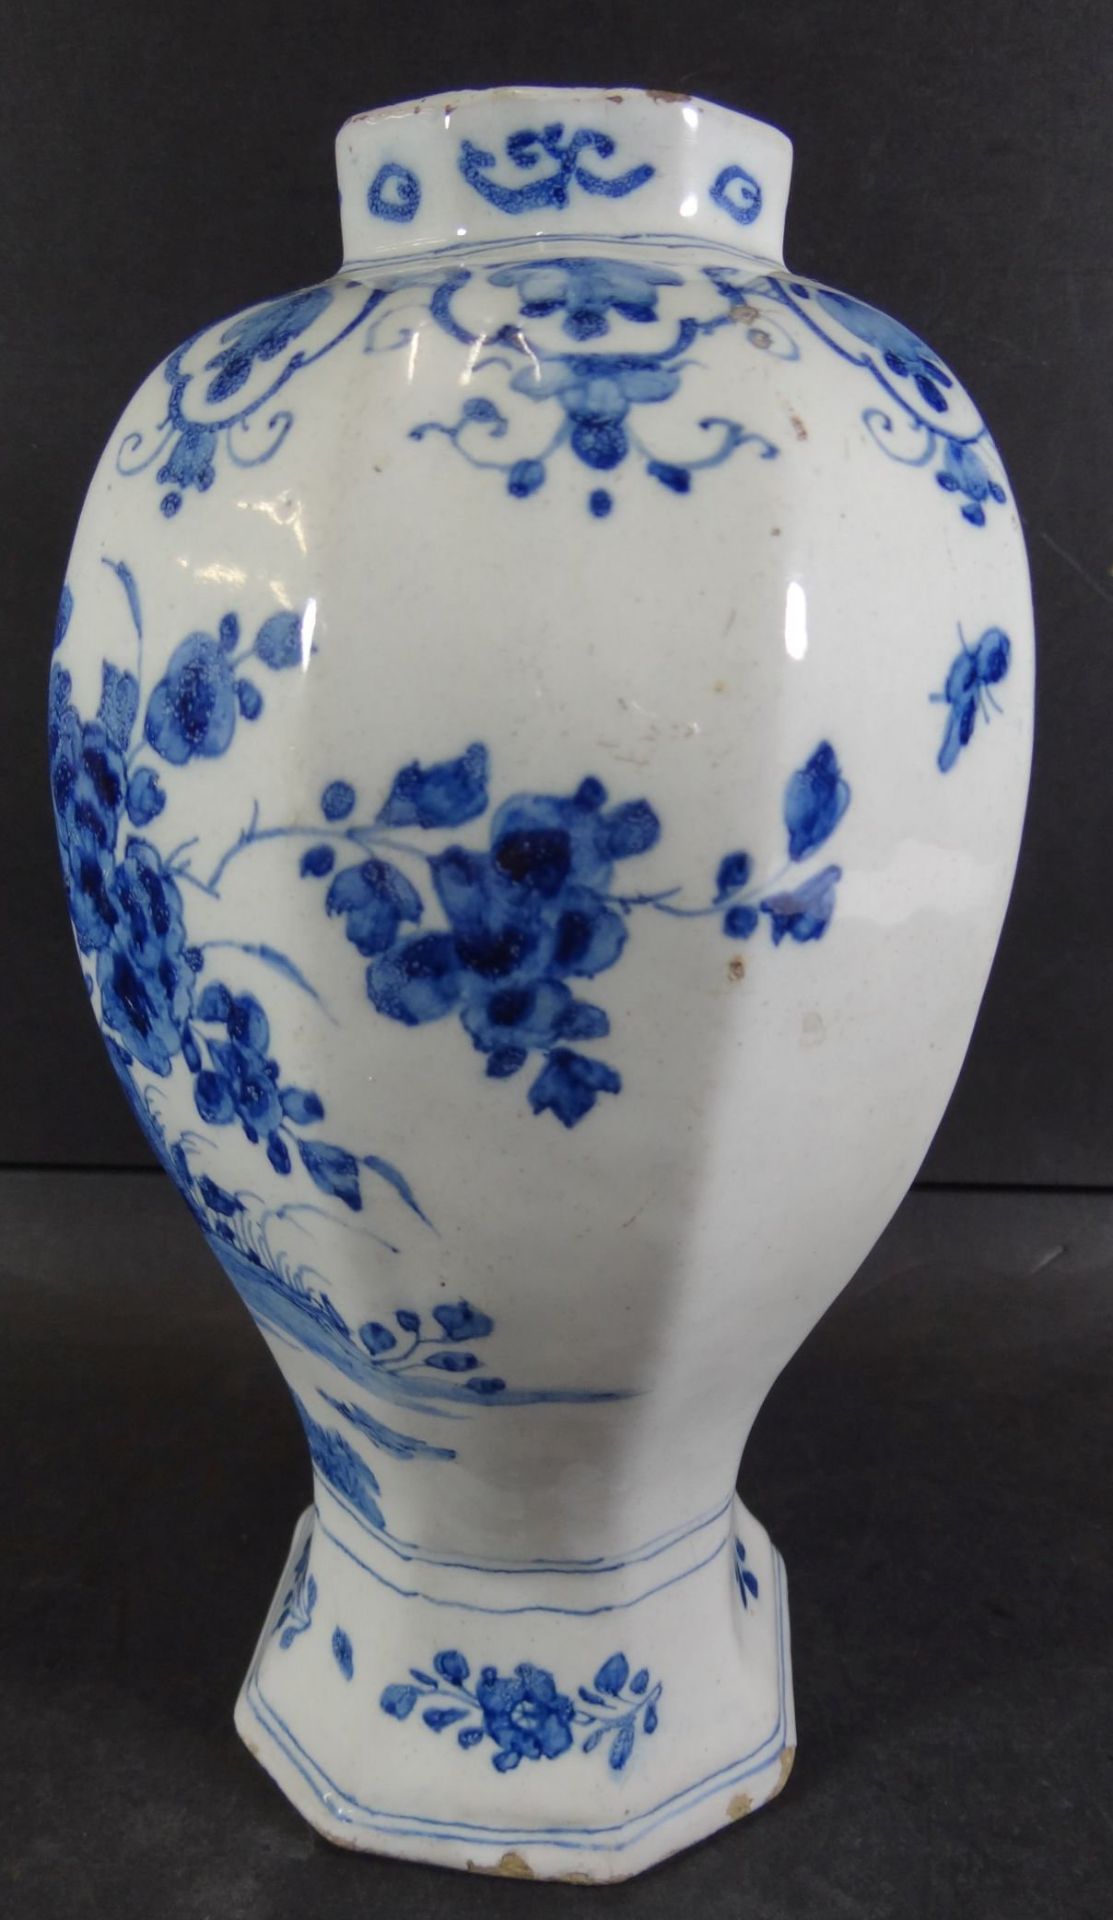 Vase mit Chinesin im Garten, Blaumalerei, wohl Delft, 18 Jhd?, H-22 cm, altrissig und mit Abplatzer - Bild 3 aus 10